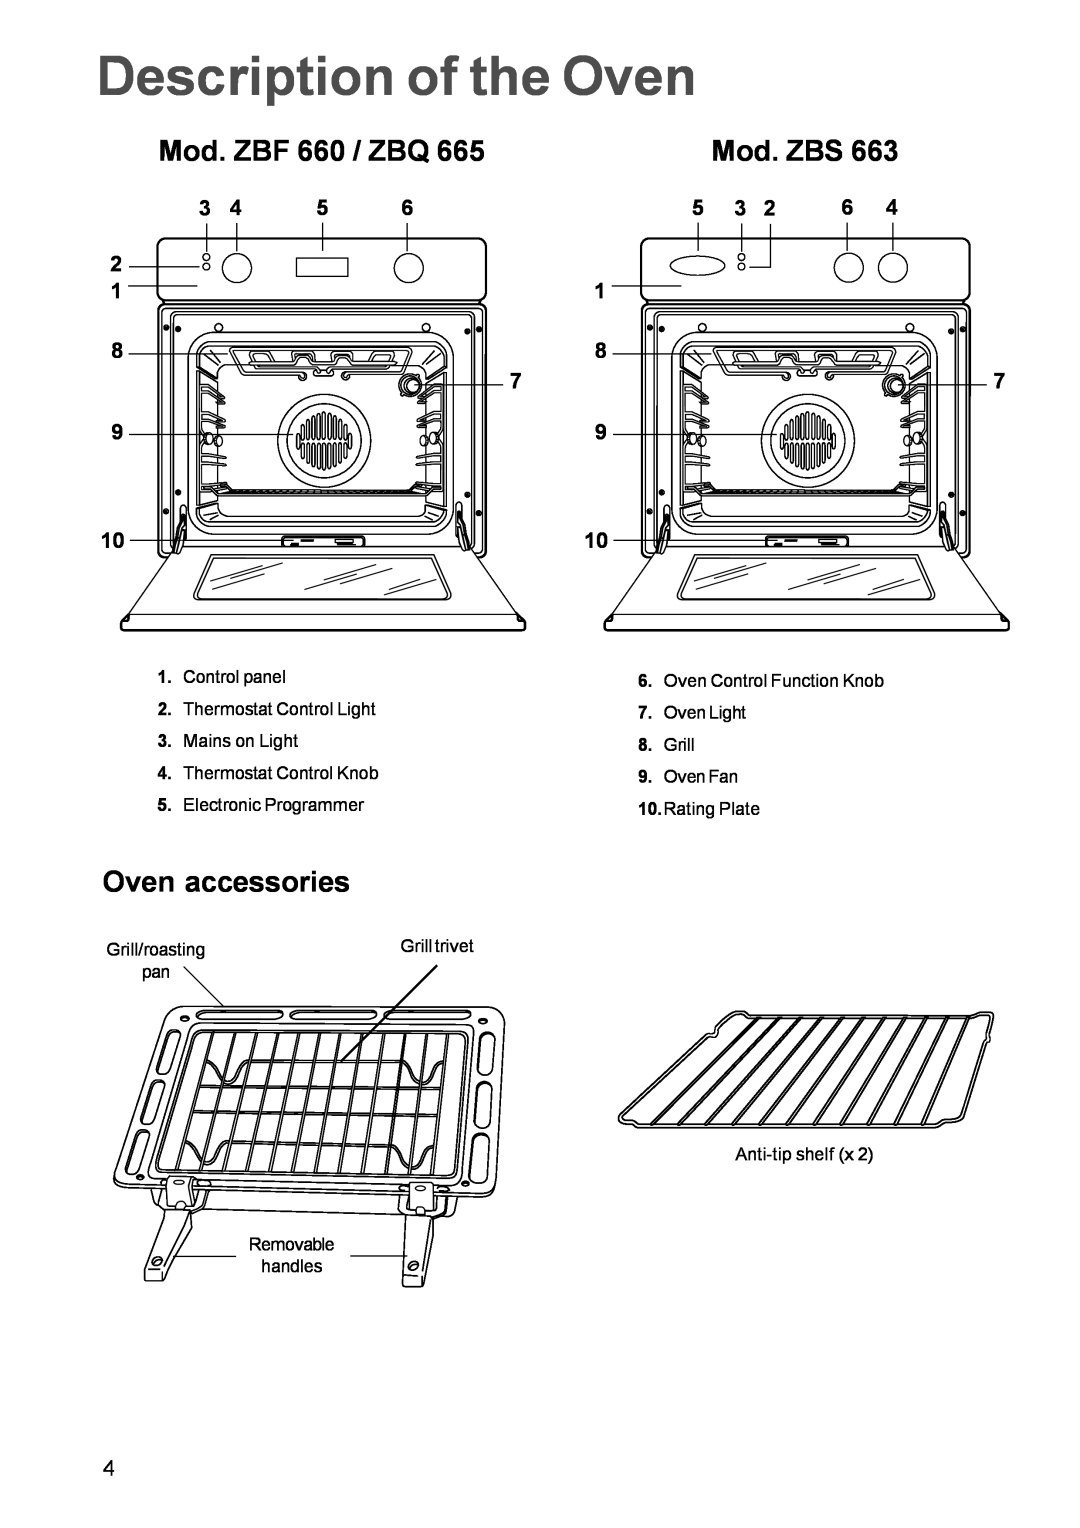 Zanussi ZBQ 665 manual Description of the Oven, Mod. ZBF 660 / ZBQ, Mod. ZBS, Oven accessories 